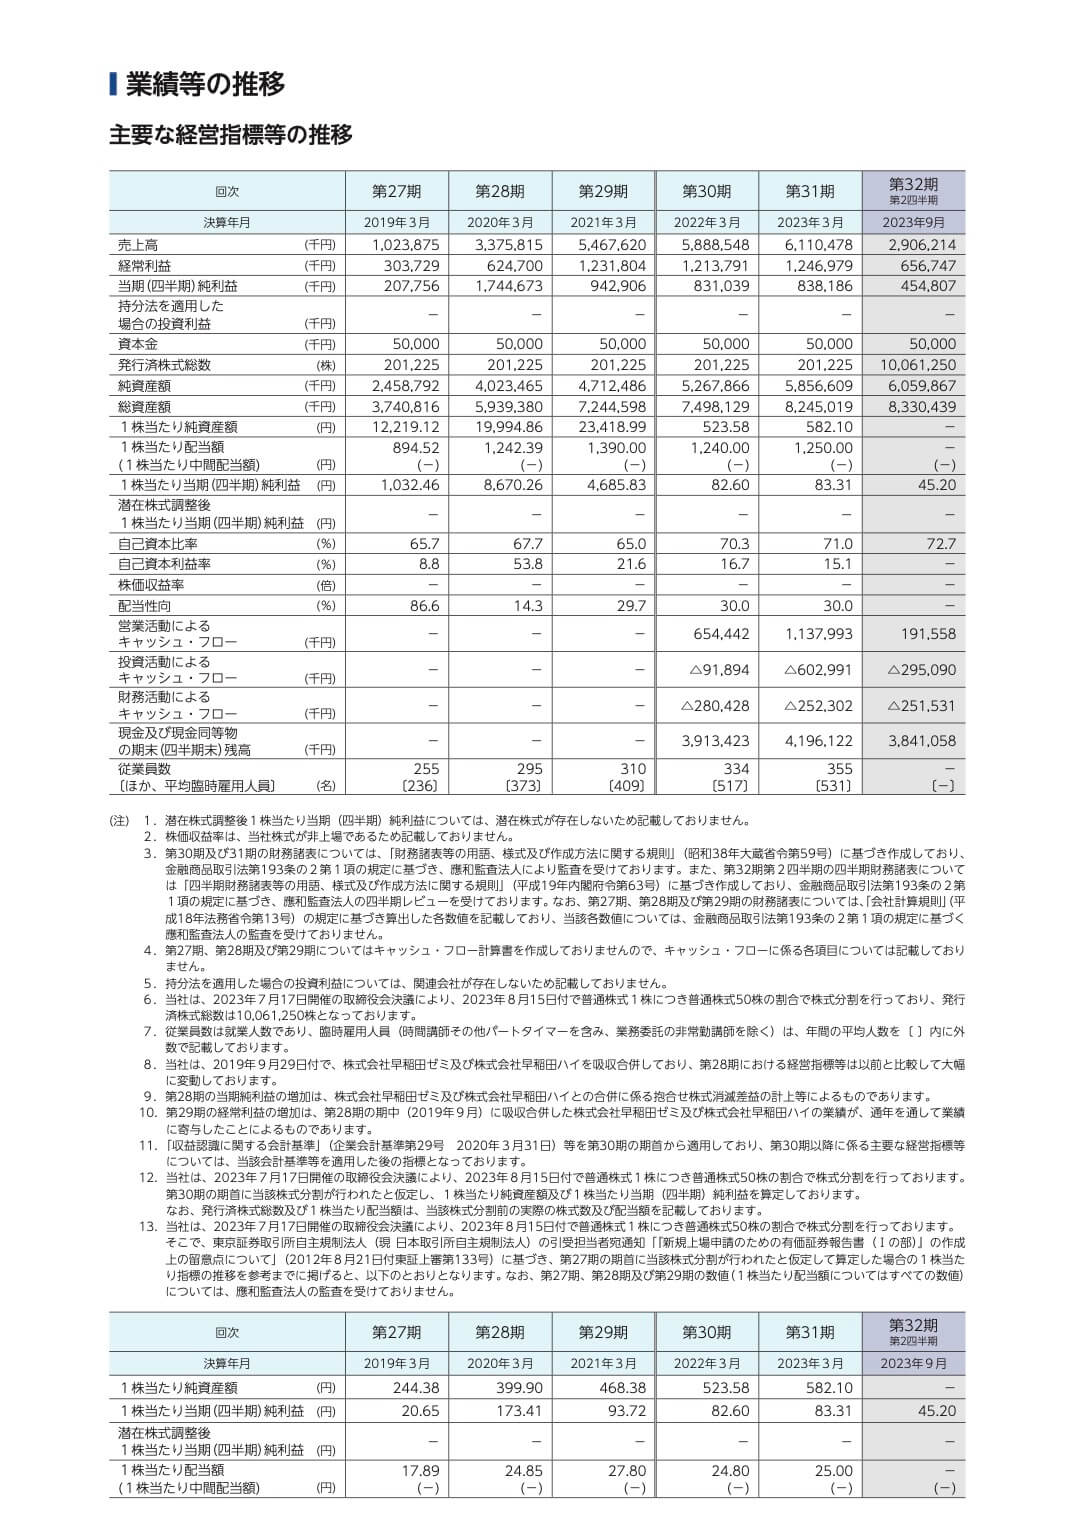 早稲田学習研究会(5869)の主要な経営指標等の推移